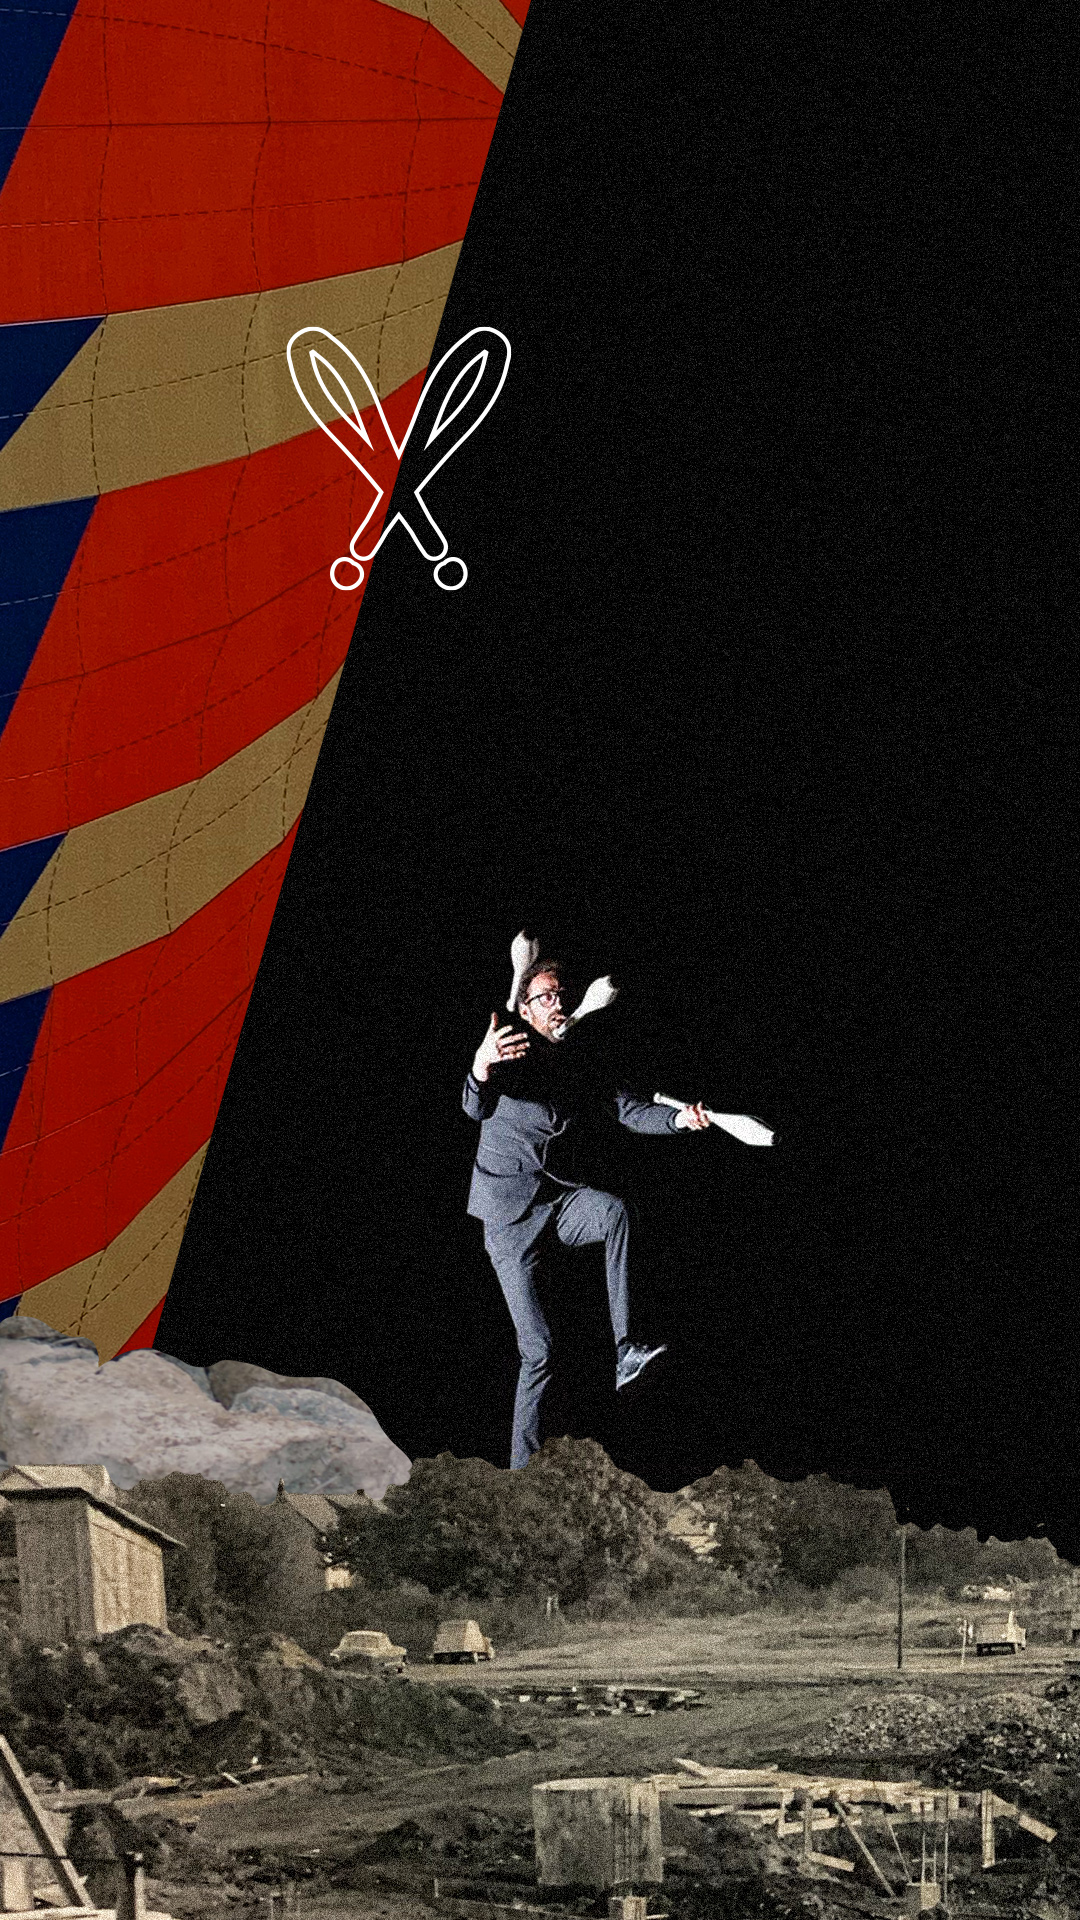 Collage jongleur - habillage graphique du documentaire Le Chapiteau